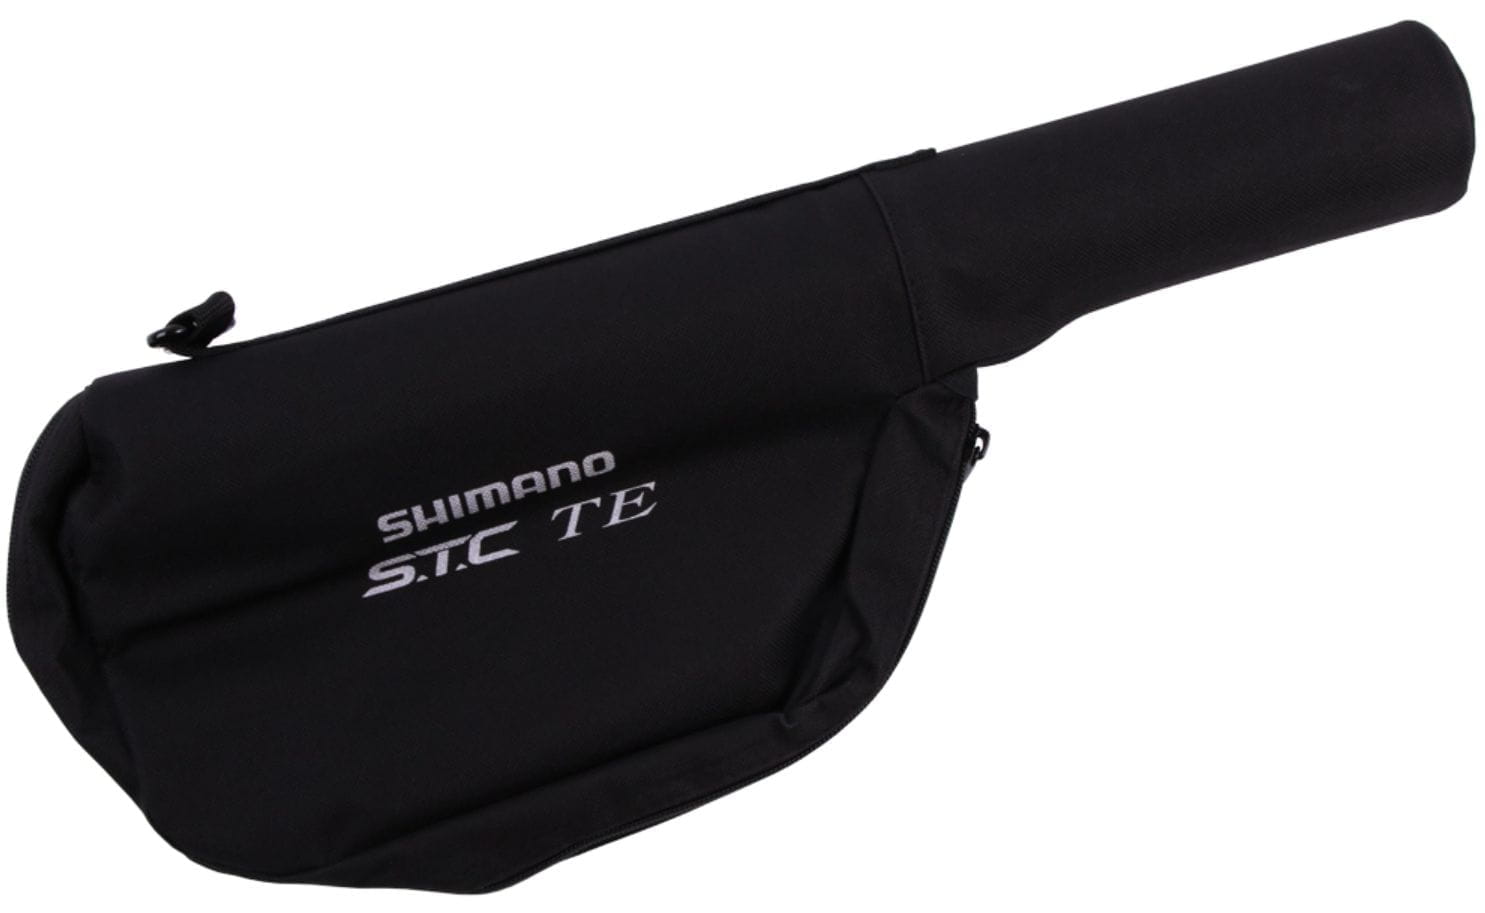 Shimano S.T.C Mini Tele Spinning,fishing rod